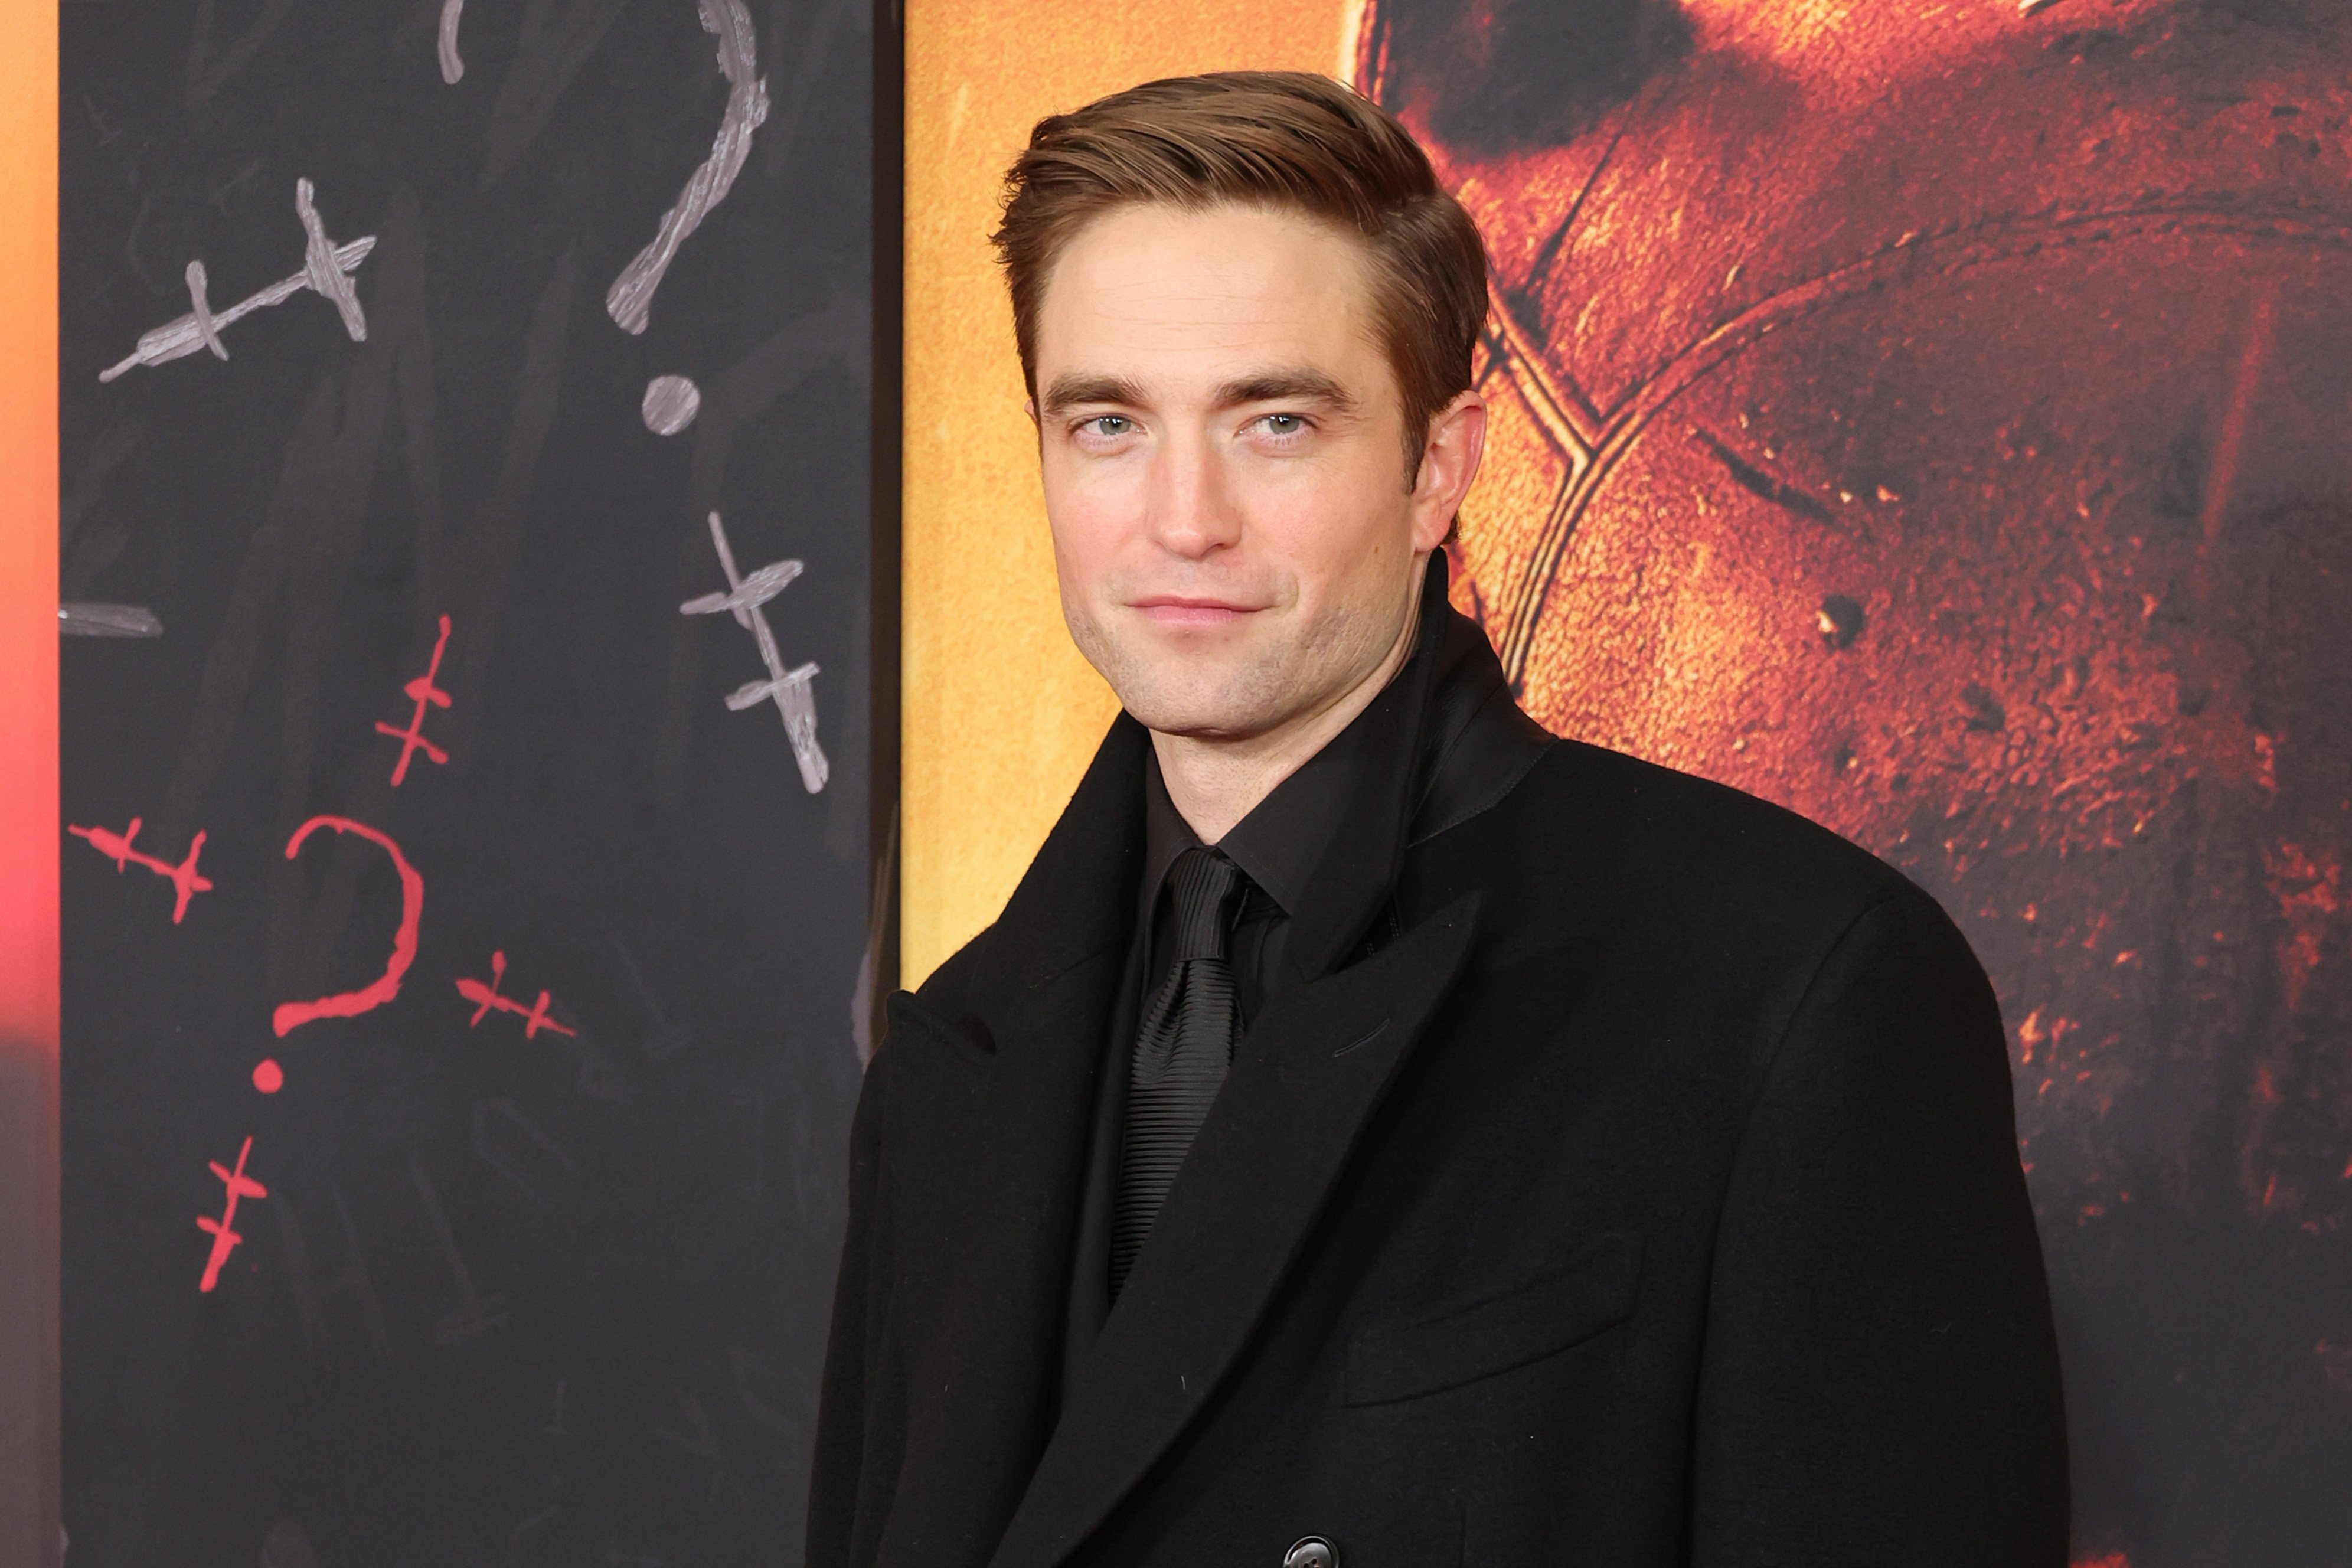 Robert Pattinson en el estreno mundial de "The Batman", el 1 de marzo de 2022 en Nueva York. | Foto: Getty Images